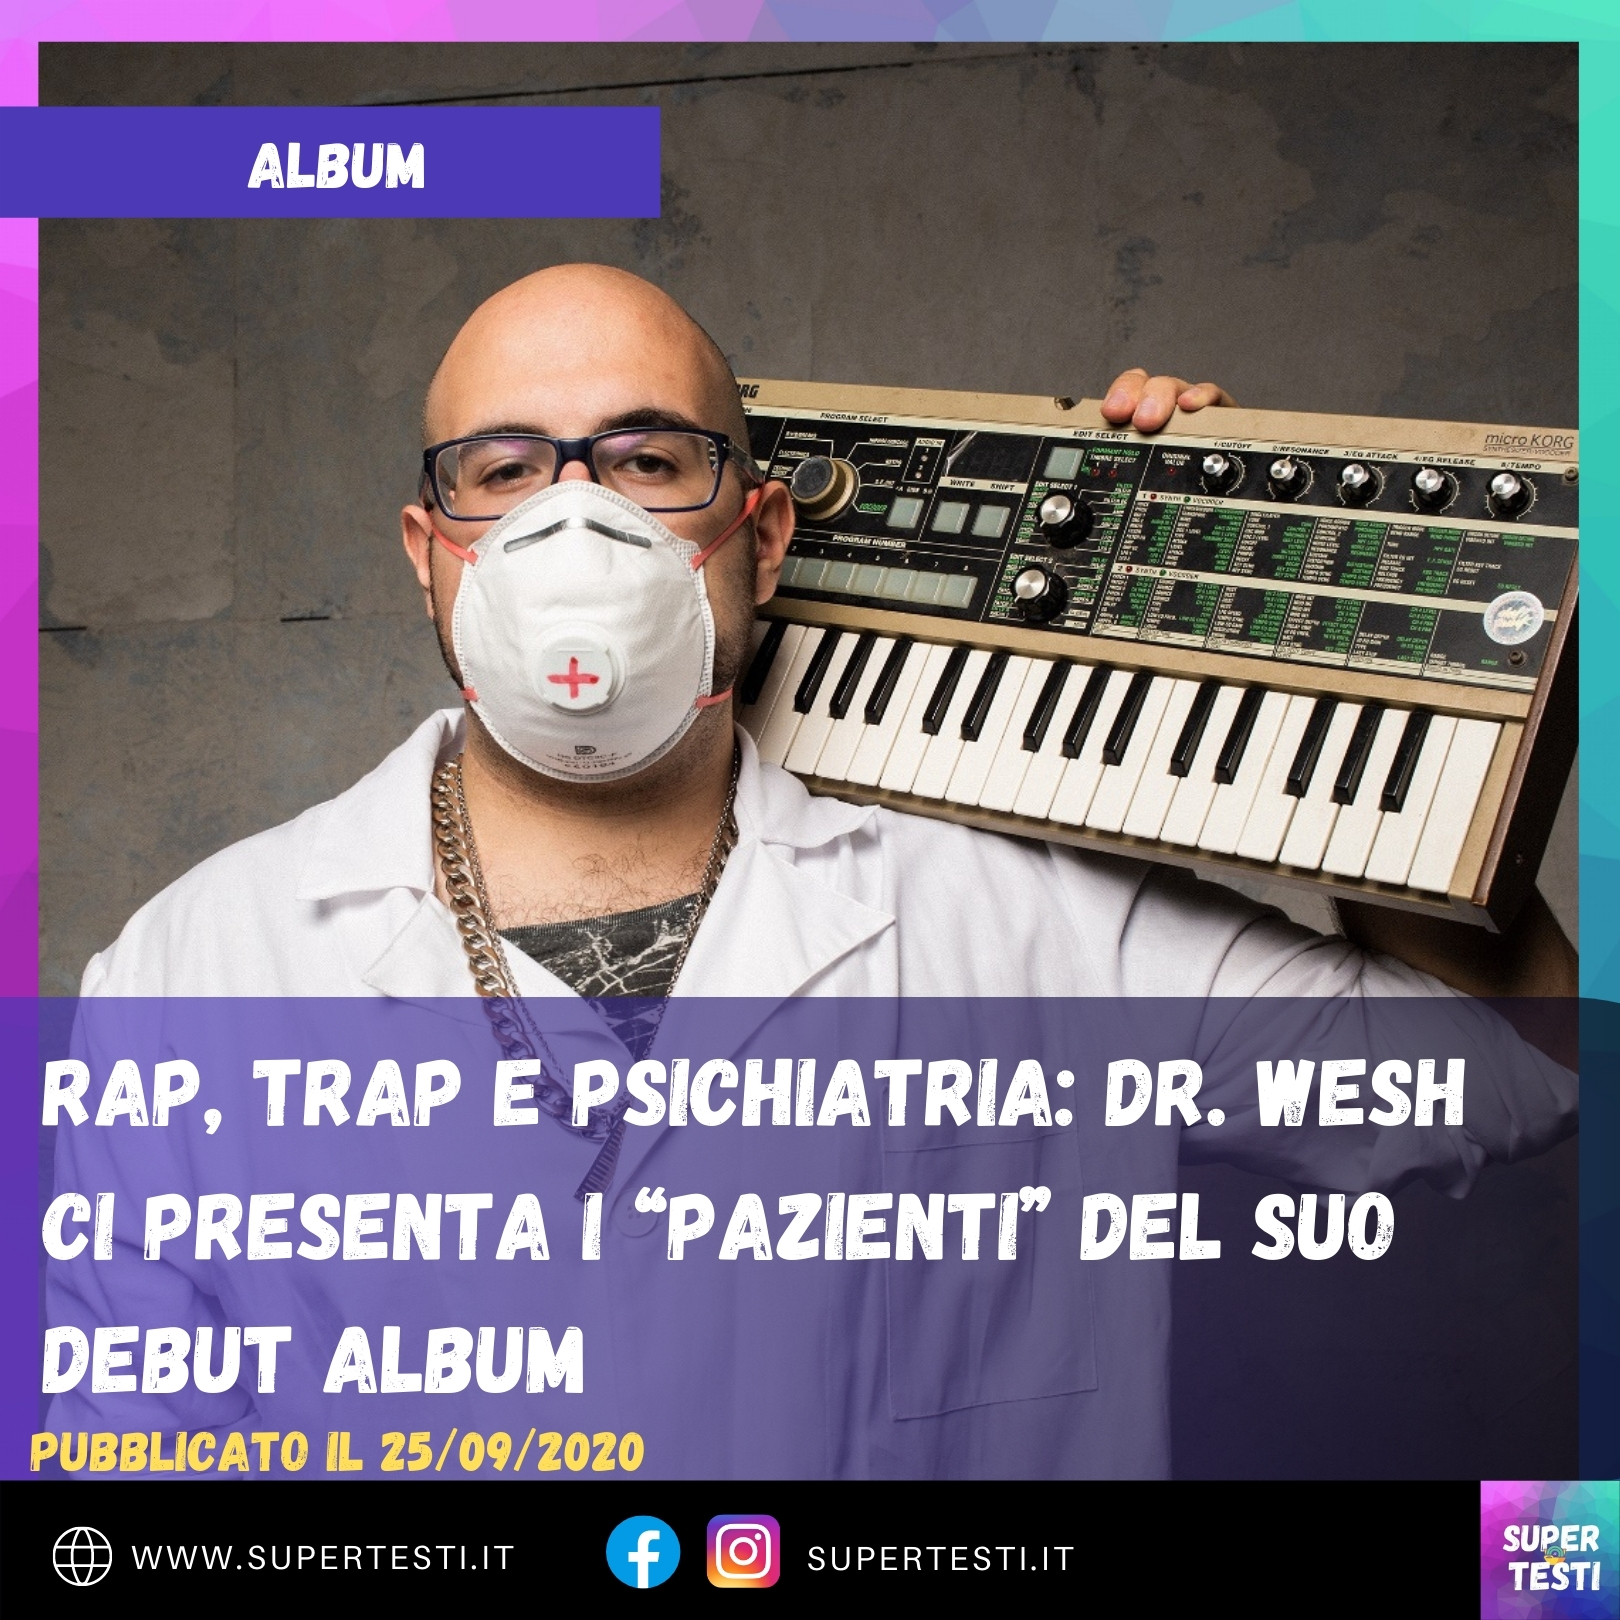 Rap, trap e psichiatria: Dr. Wesh ci presenta i “Pazienti” del suo debut album